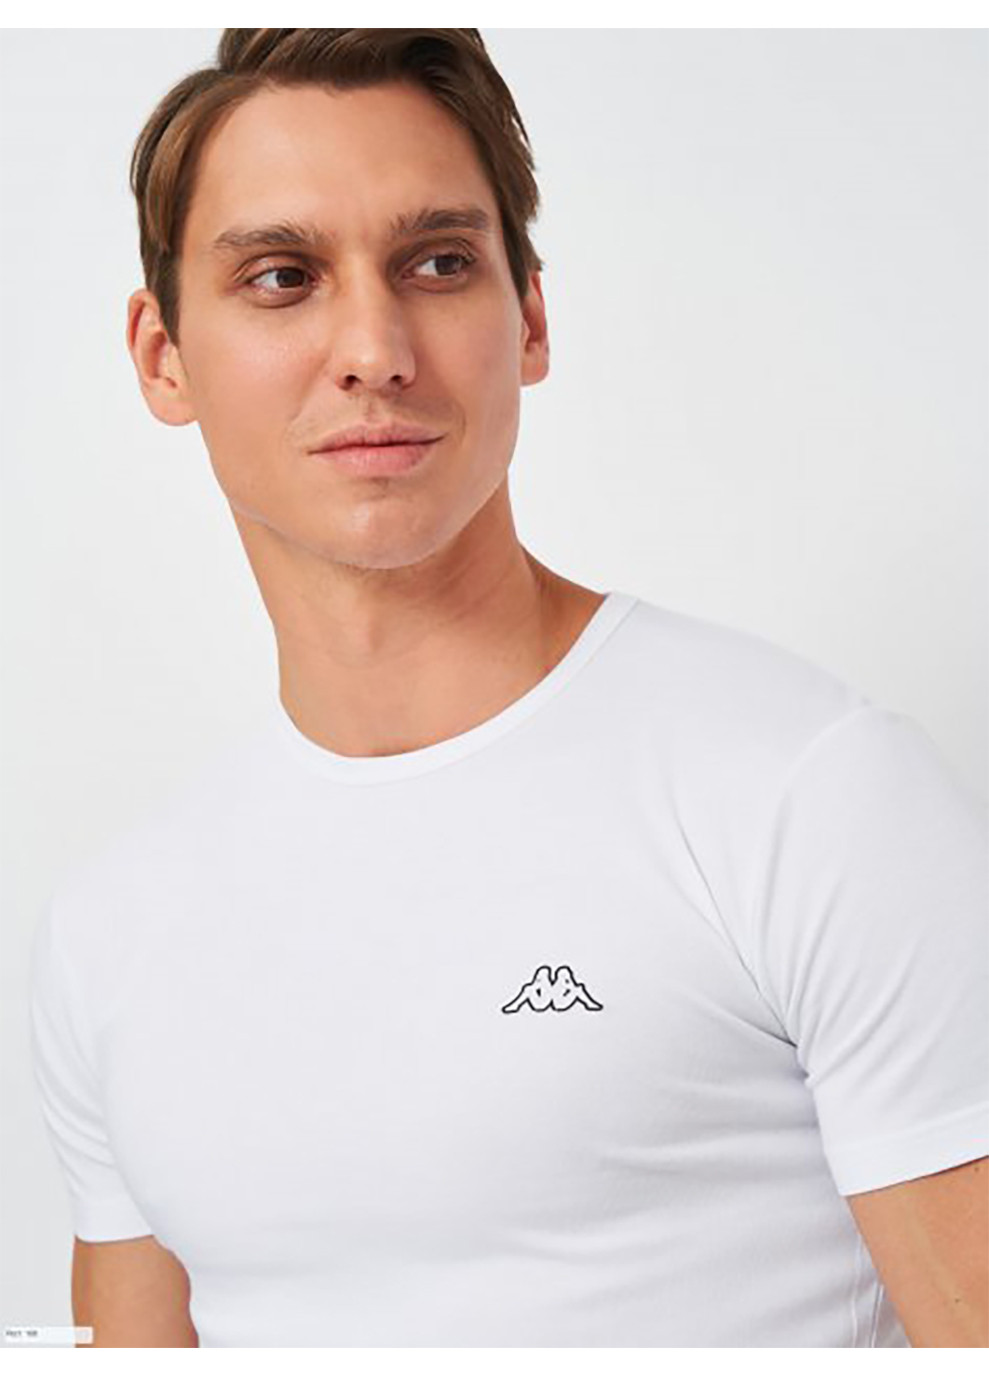 Біла футболка t-shirt mezza manica girocollo білий l чол k1304 bianco-l Kappa